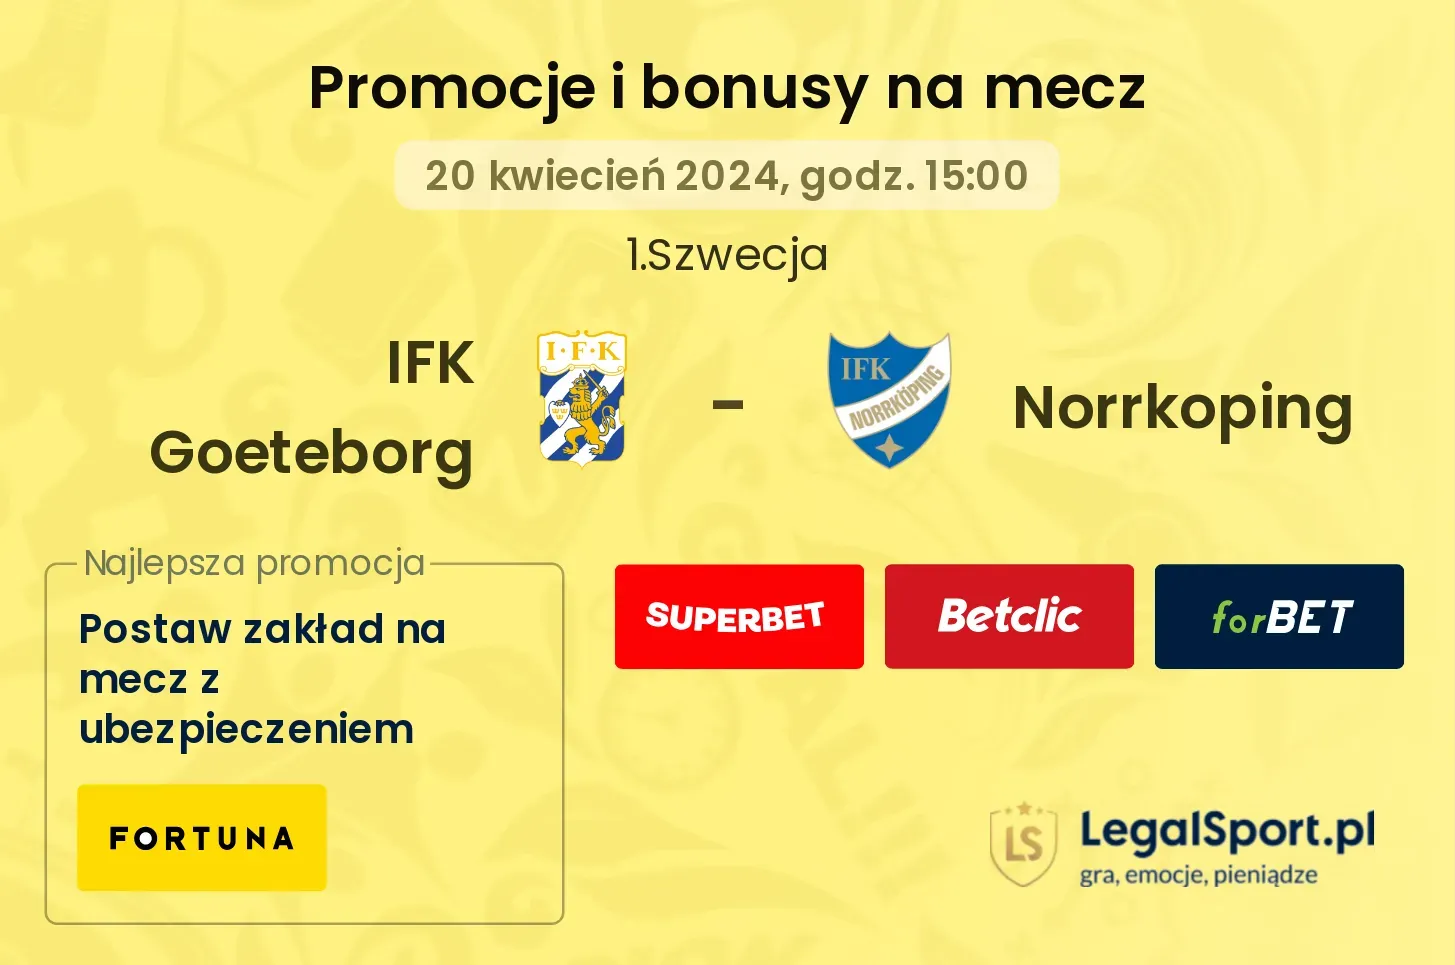 IFK Goeteborg - Norrkoping promocje bonusy na mecz